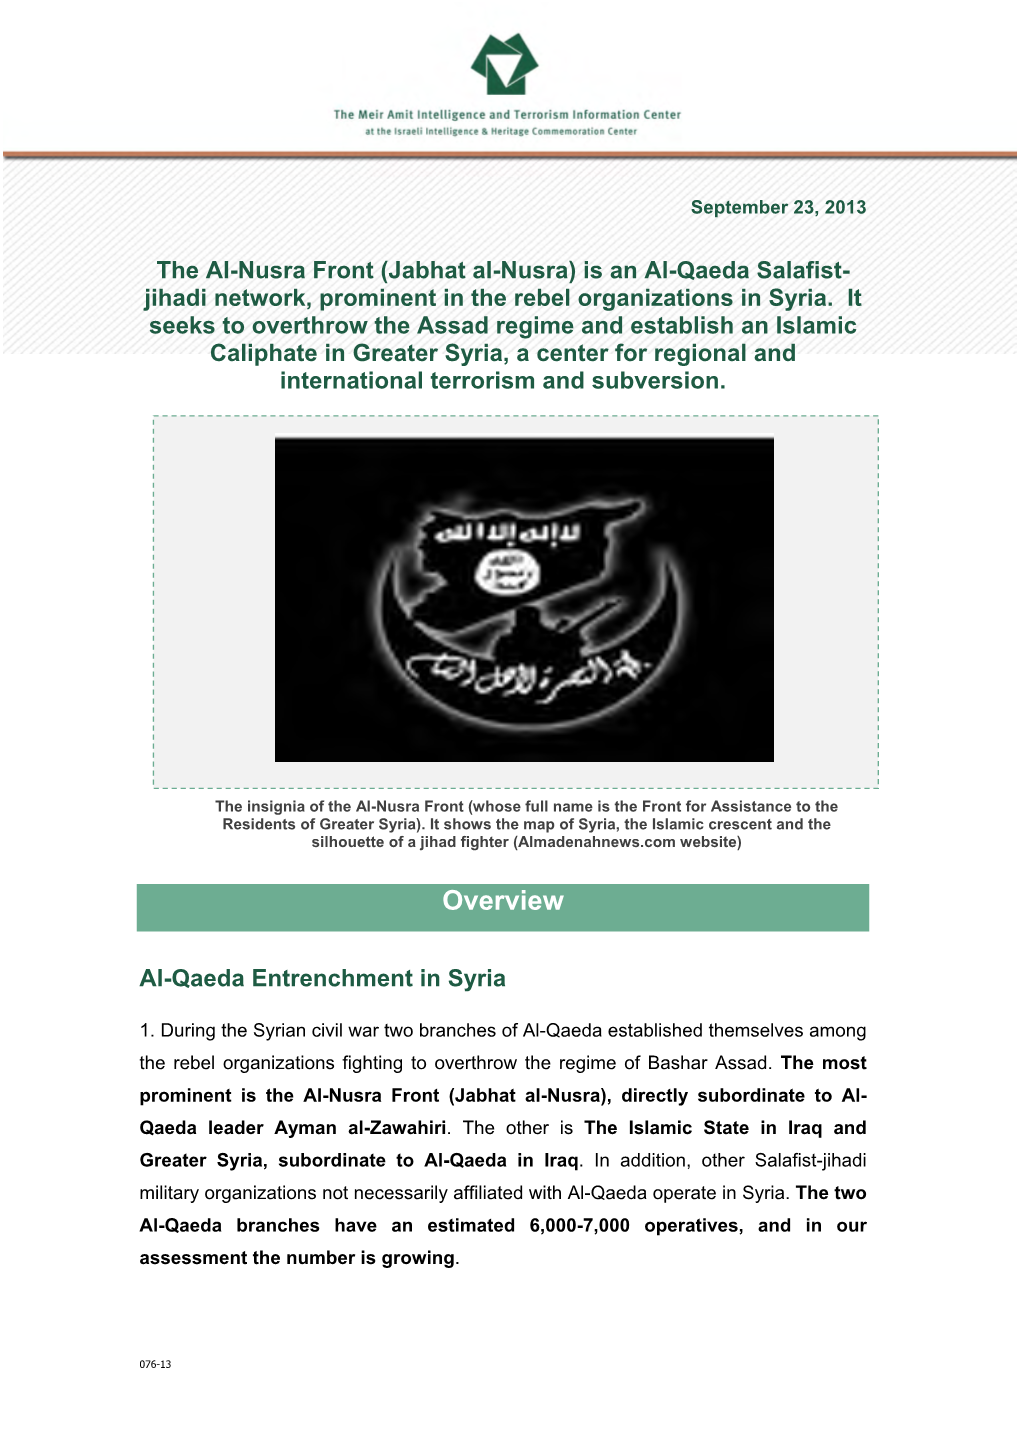 (Jabhat Al-Nusra) Is an Al-Qaeda Salafist-Jihadi Network, Prominent in the Rebel Organizations in Syria